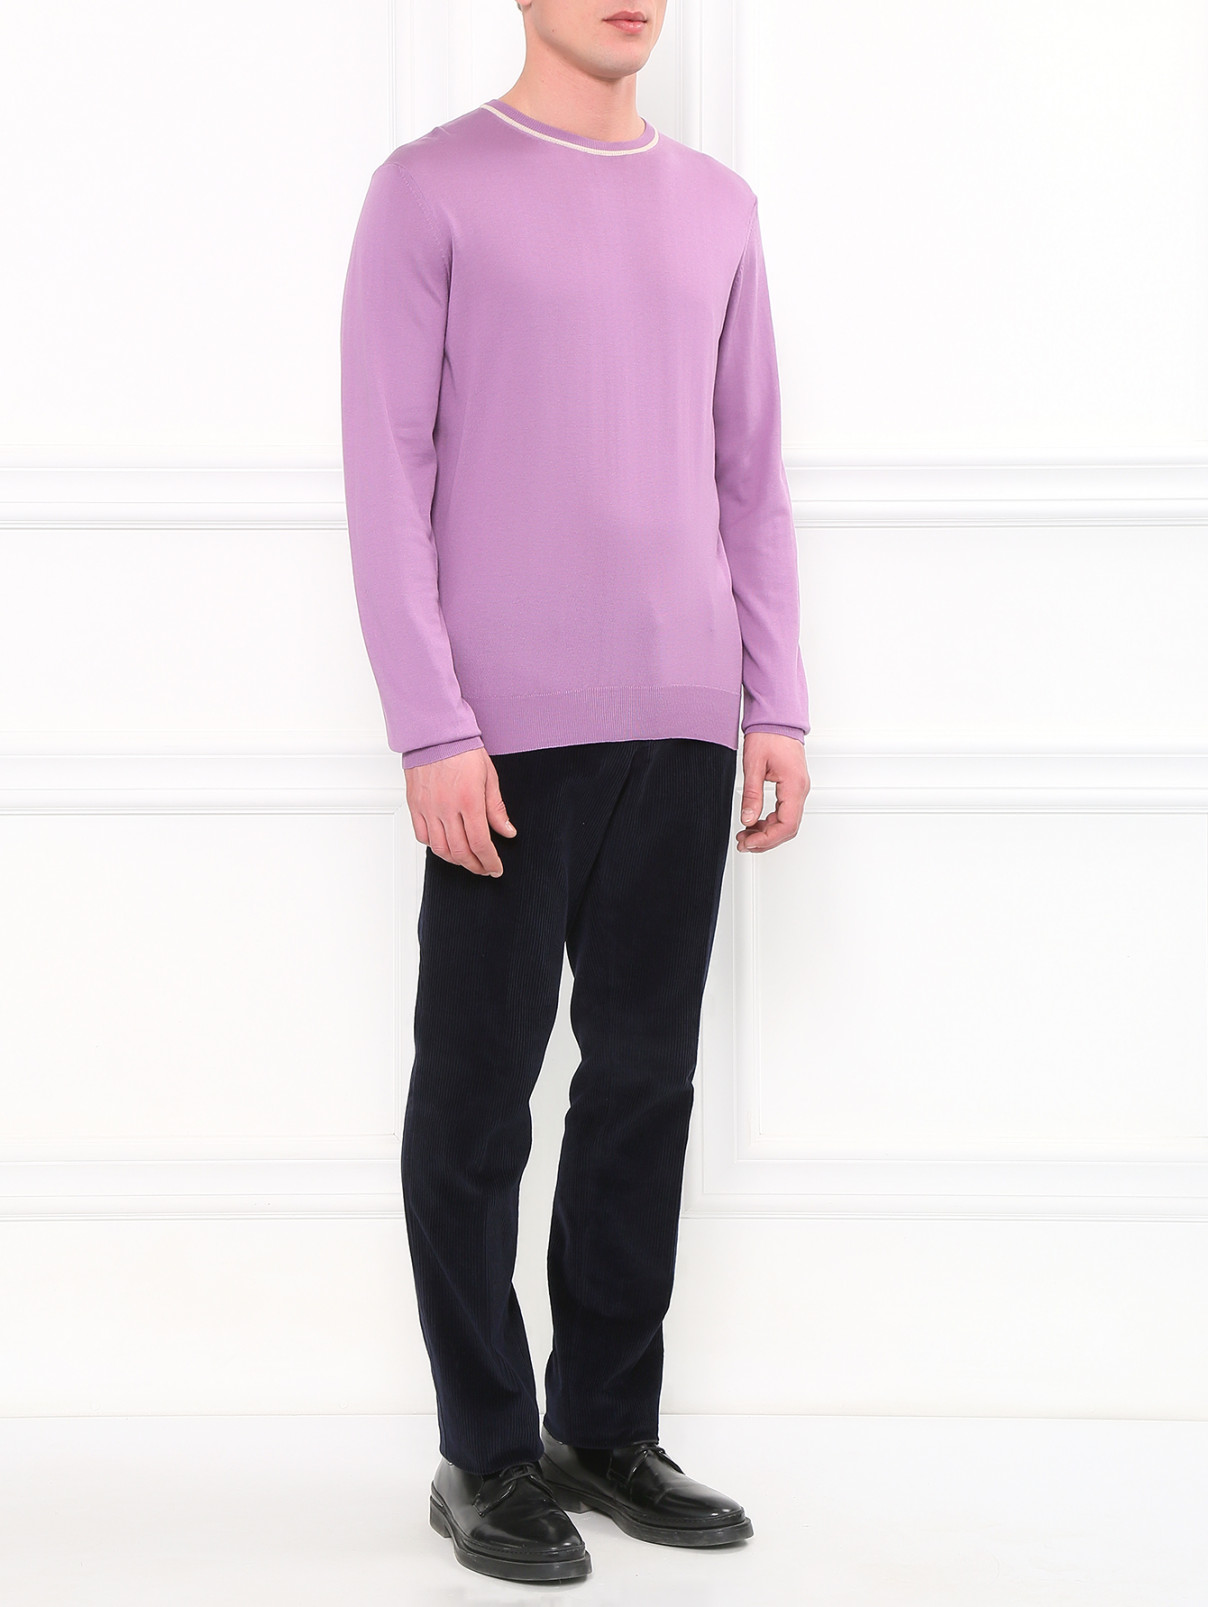 Джемпер из шелка и хлопка Pal Zileri  –  Модель Общий вид  – Цвет:  Фиолетовый